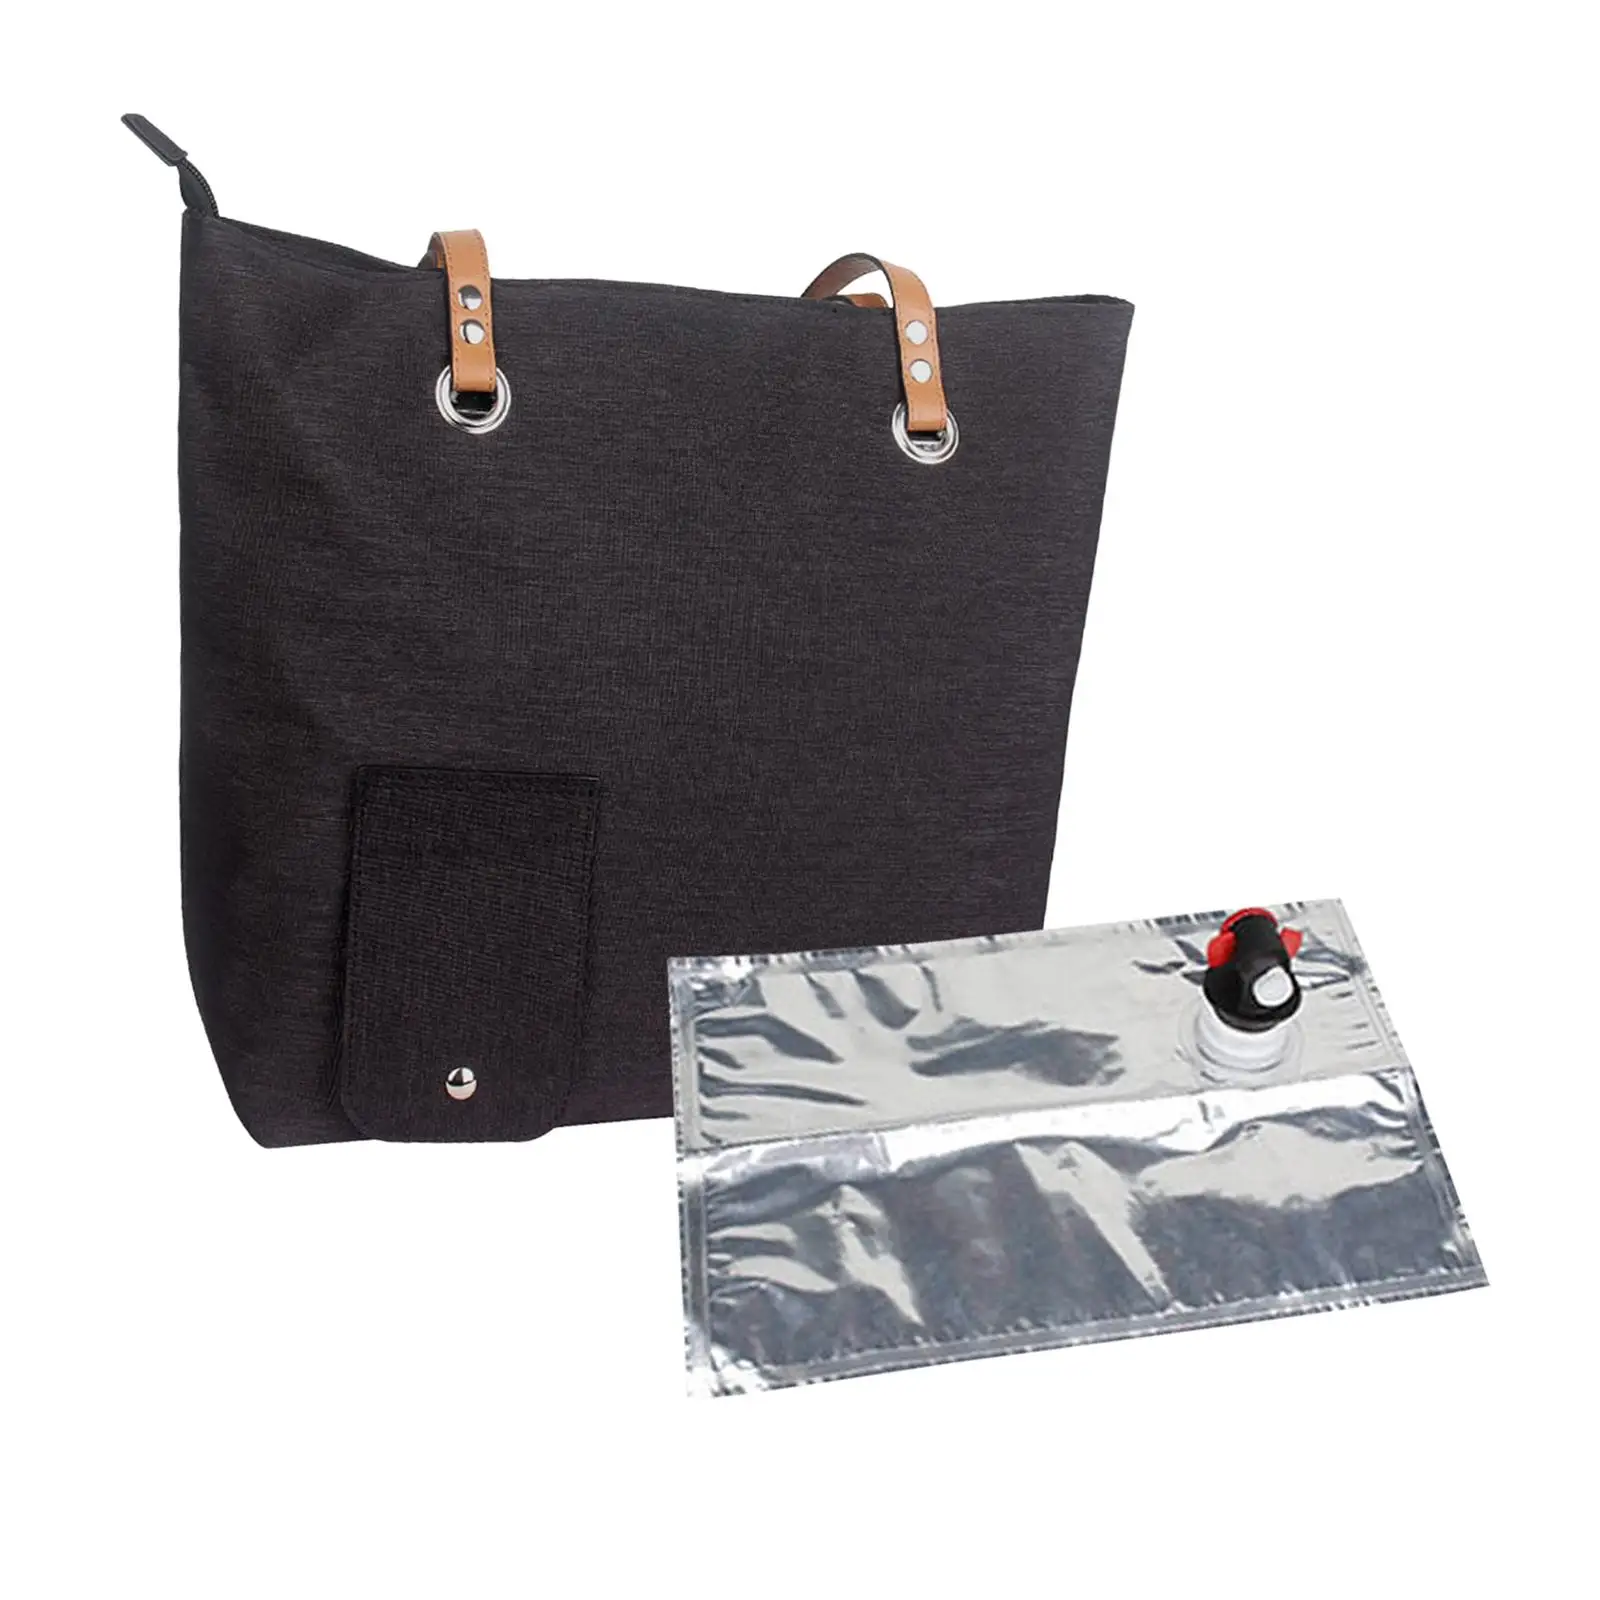 Insulated Cooler Bag Travel Beverage Handbag Water Cooler Bag Shoulder Bag for Camping Fishing